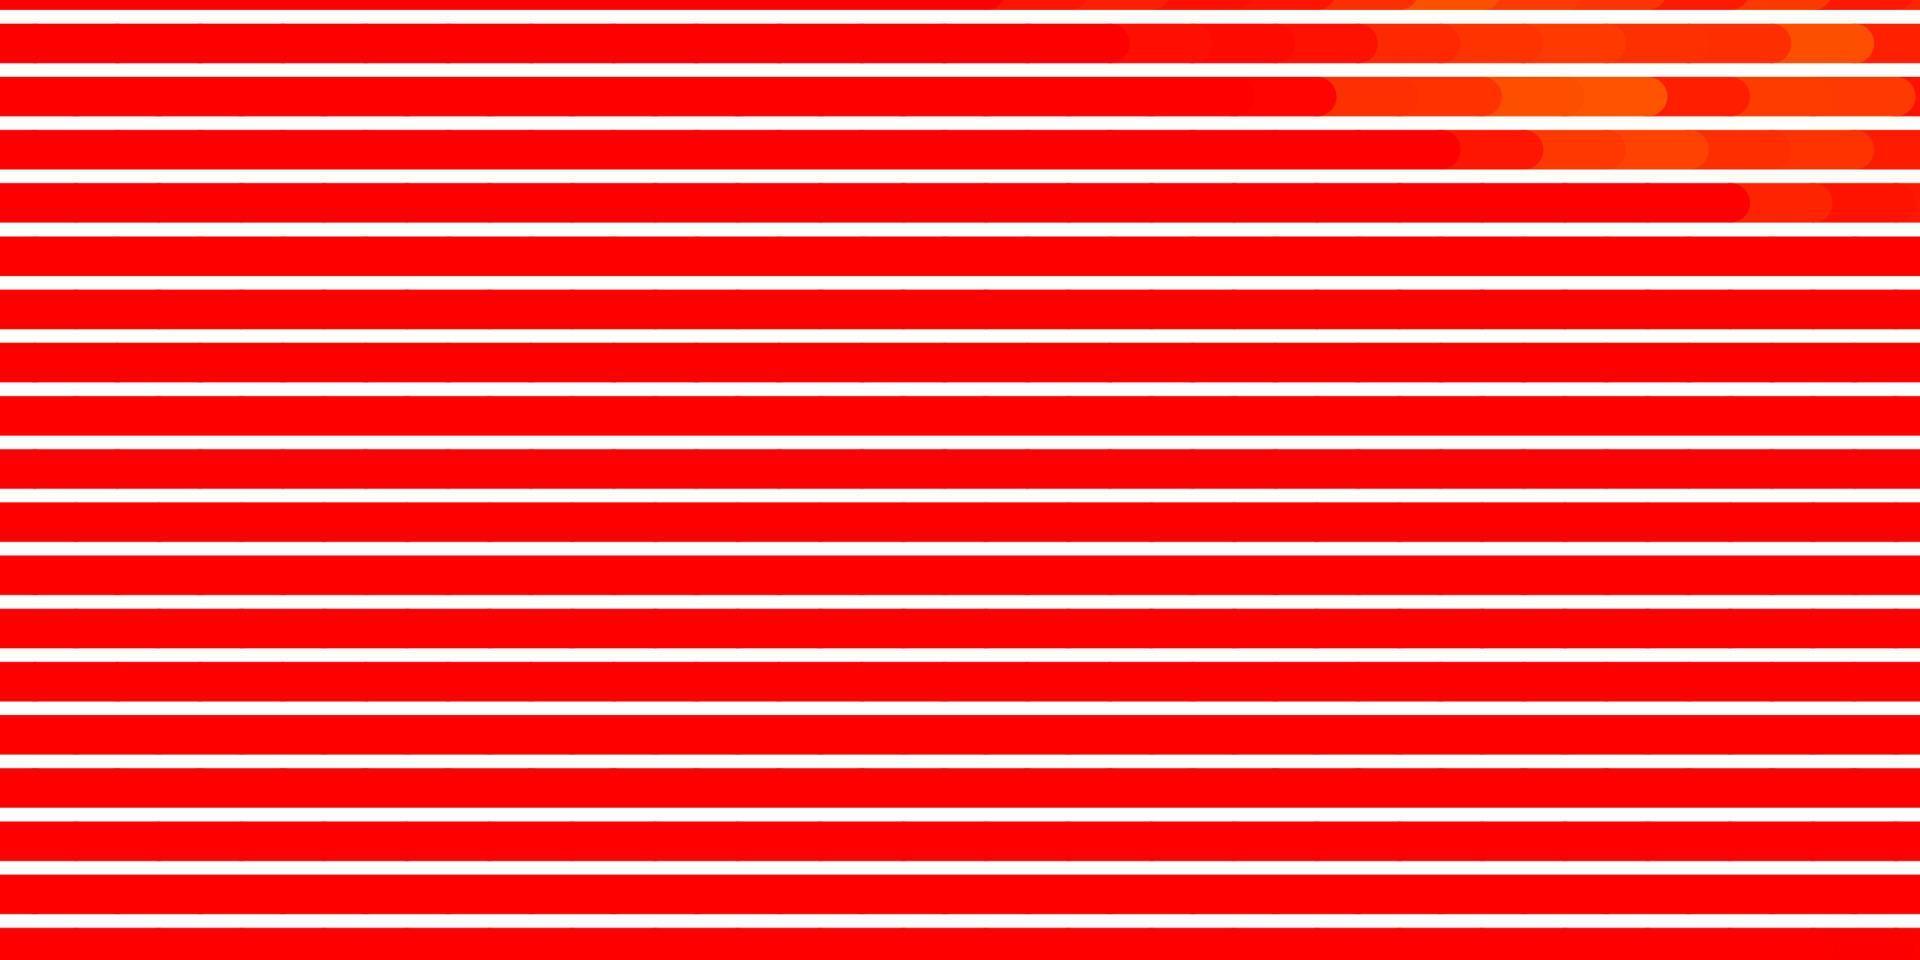 ljus orange vektor bakgrund med linjer.